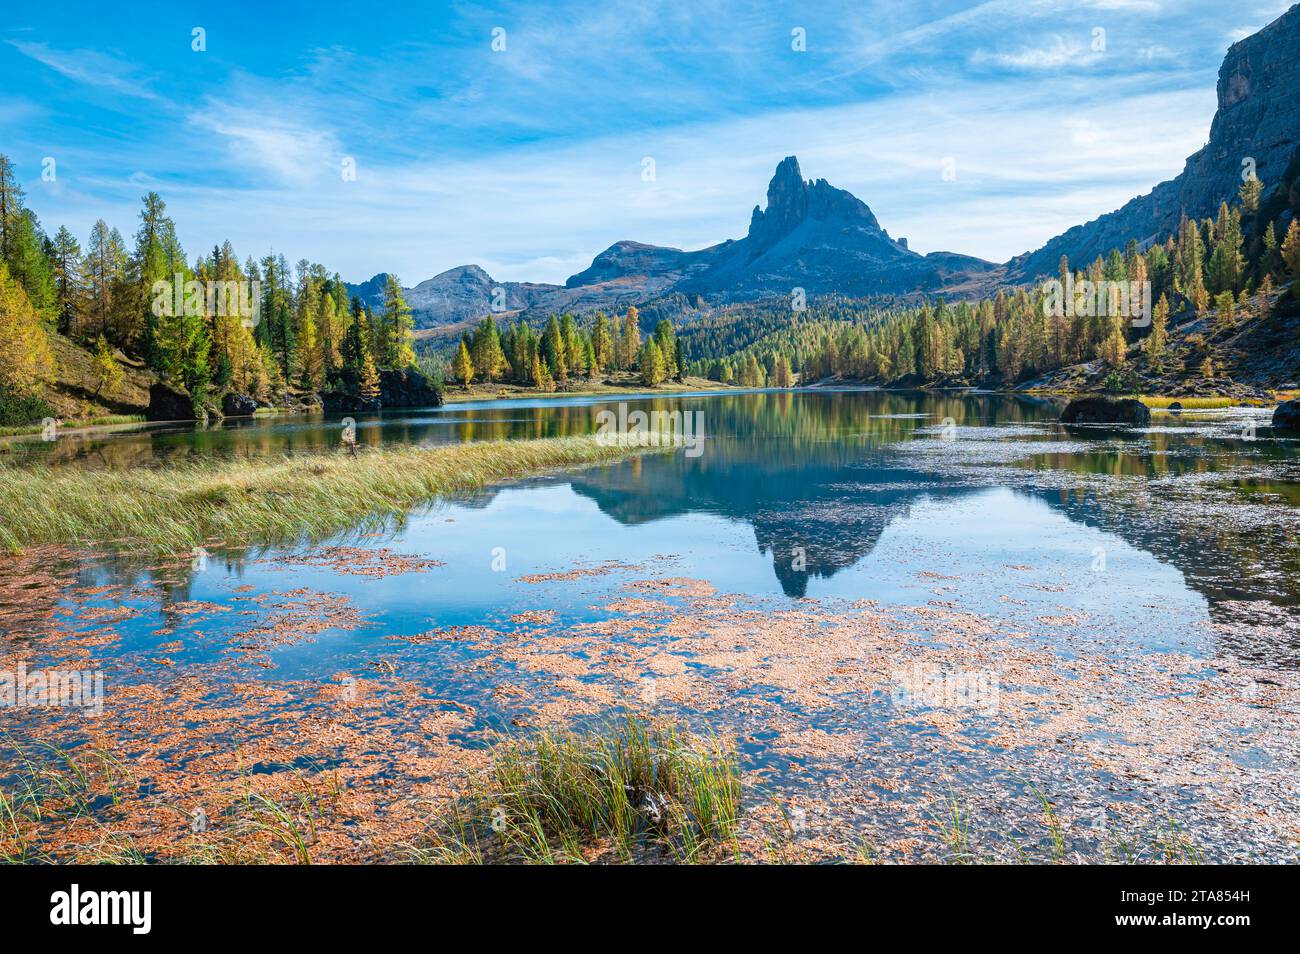 Montagne rocheuse emblématique de dolomite près d'un lac alpin en automne Banque D'Images